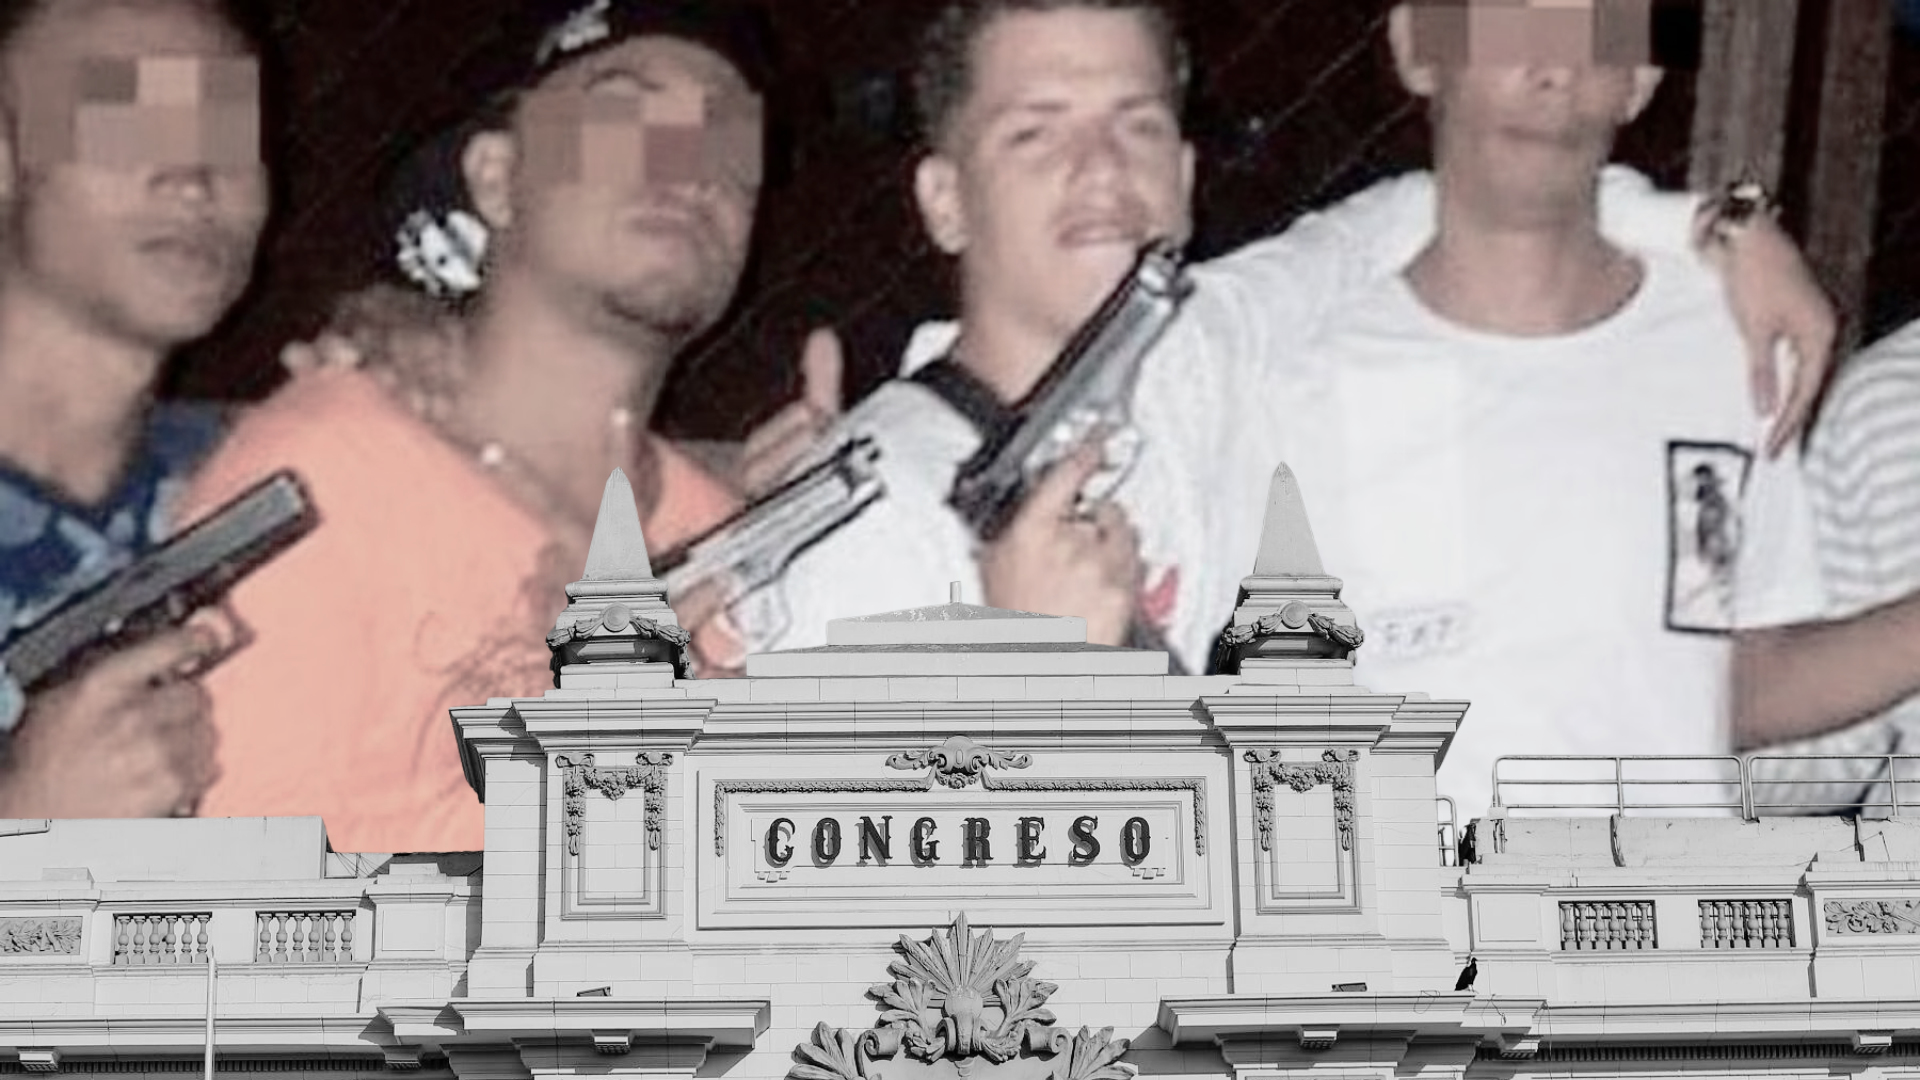 La amenaza del Tren de Aragua al Congreso: banda criminal siembra el terror y extorsiona a funcionario del Estado